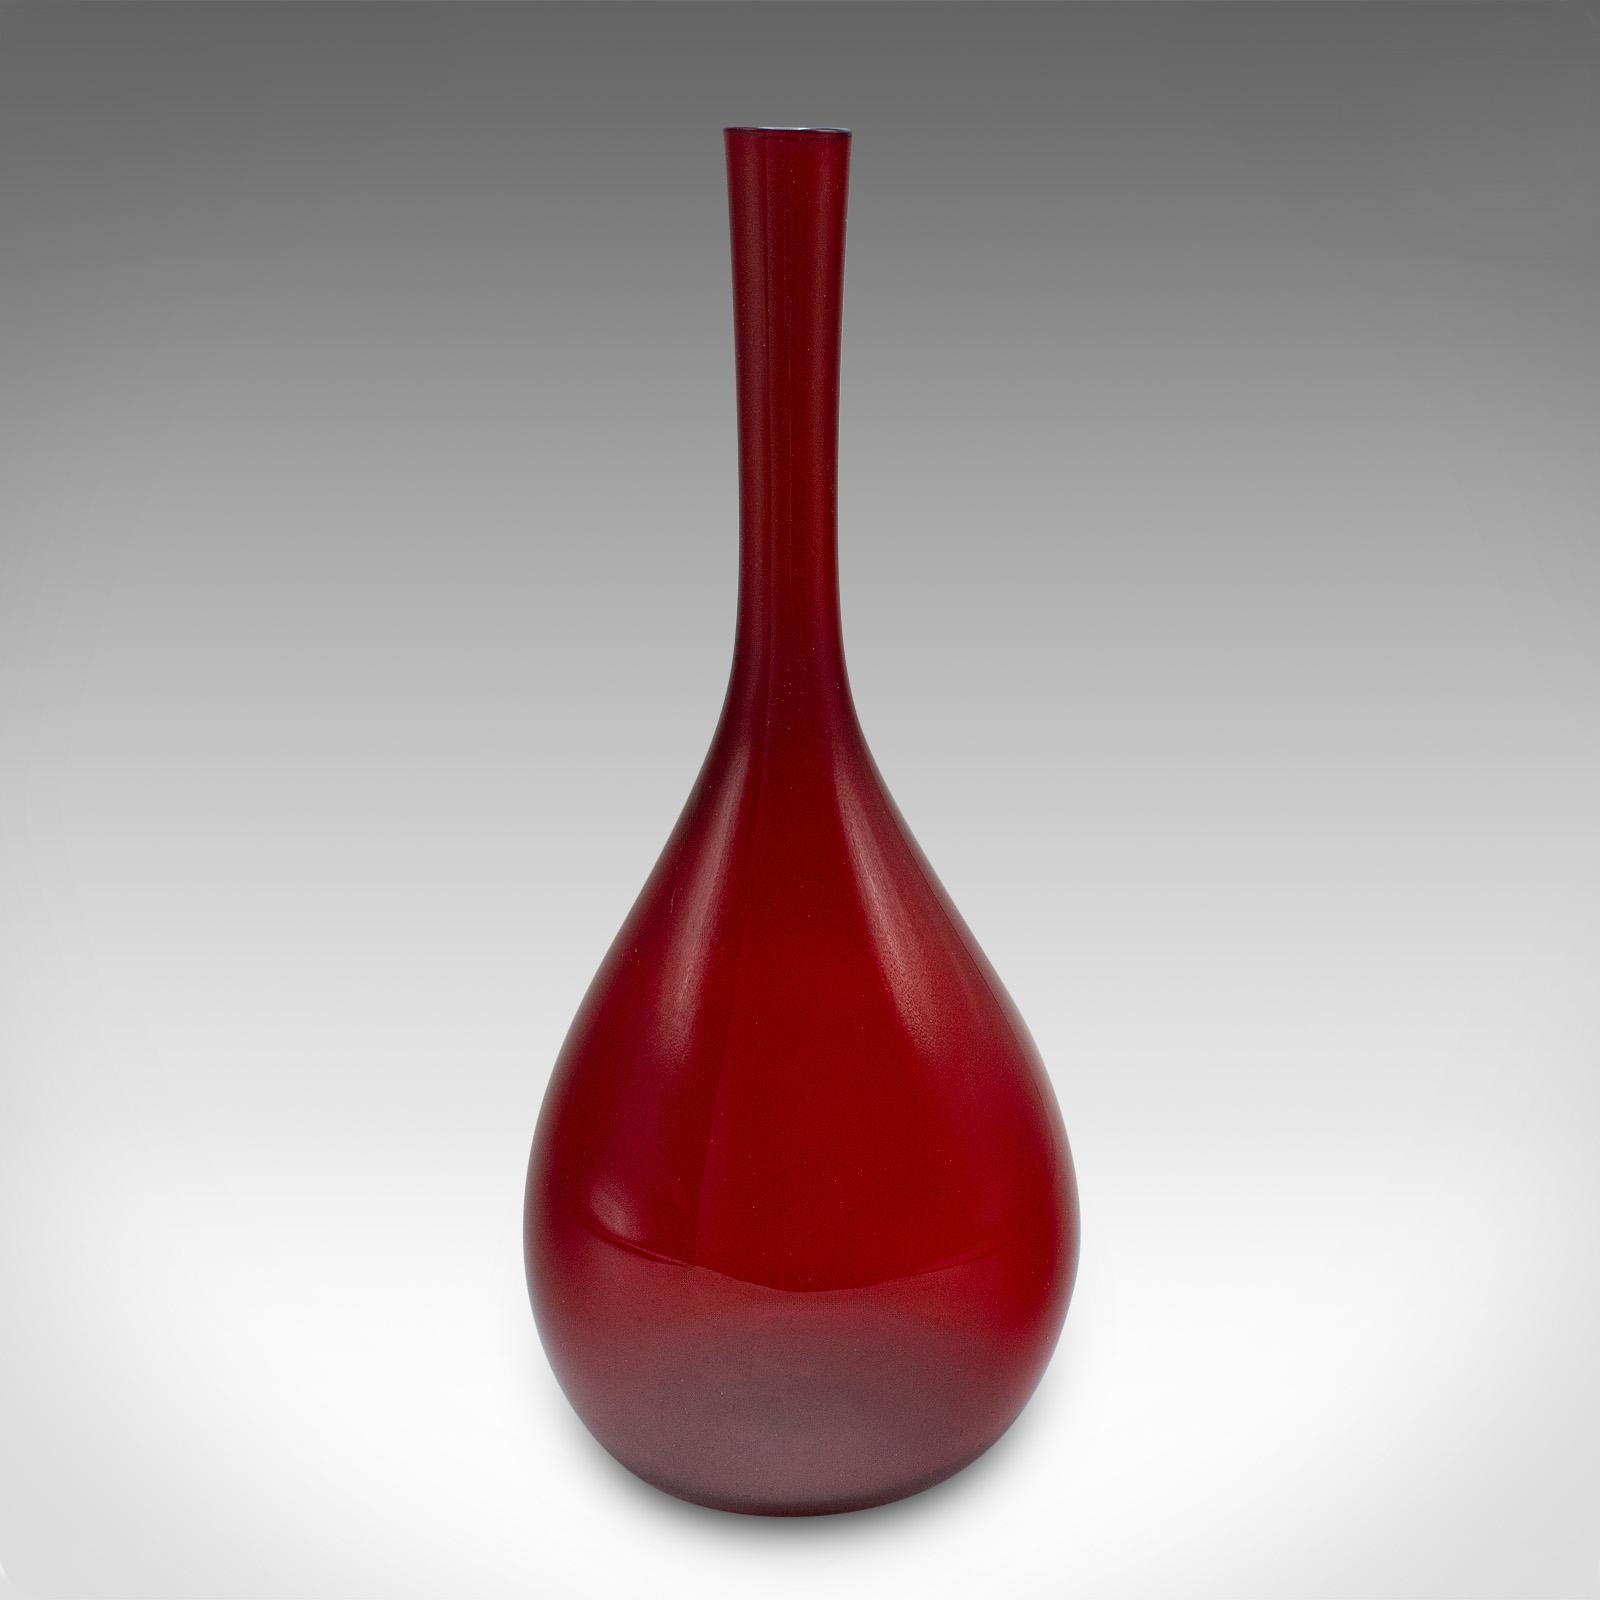 Dies ist eine Vintage-Vase mit schmalem Stiel. Eine skandinavische, dekorative Glashülle mit Apothekergeschmack, aus der Mitte des 20. Jahrhunderts, um 1960.

Satte Farbe mit einer Ästhetik, die an Laborgläser erinnert
Zeigt eine wünschenswerte